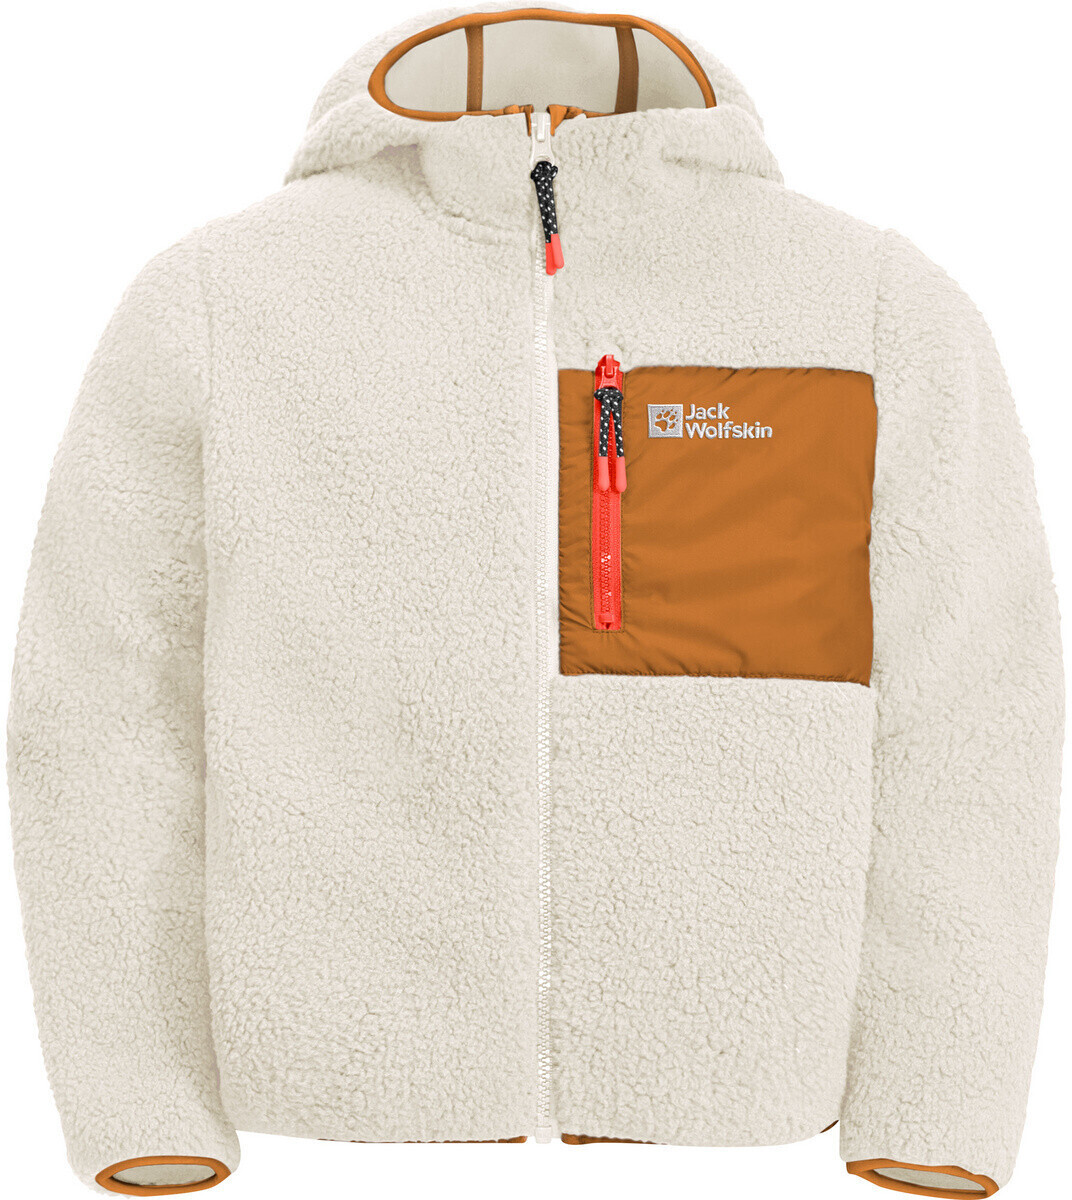 Jack Wolfskin Ice Curl Hood Jacket Kids cotton white ab 32,90 € |  Preisvergleich bei